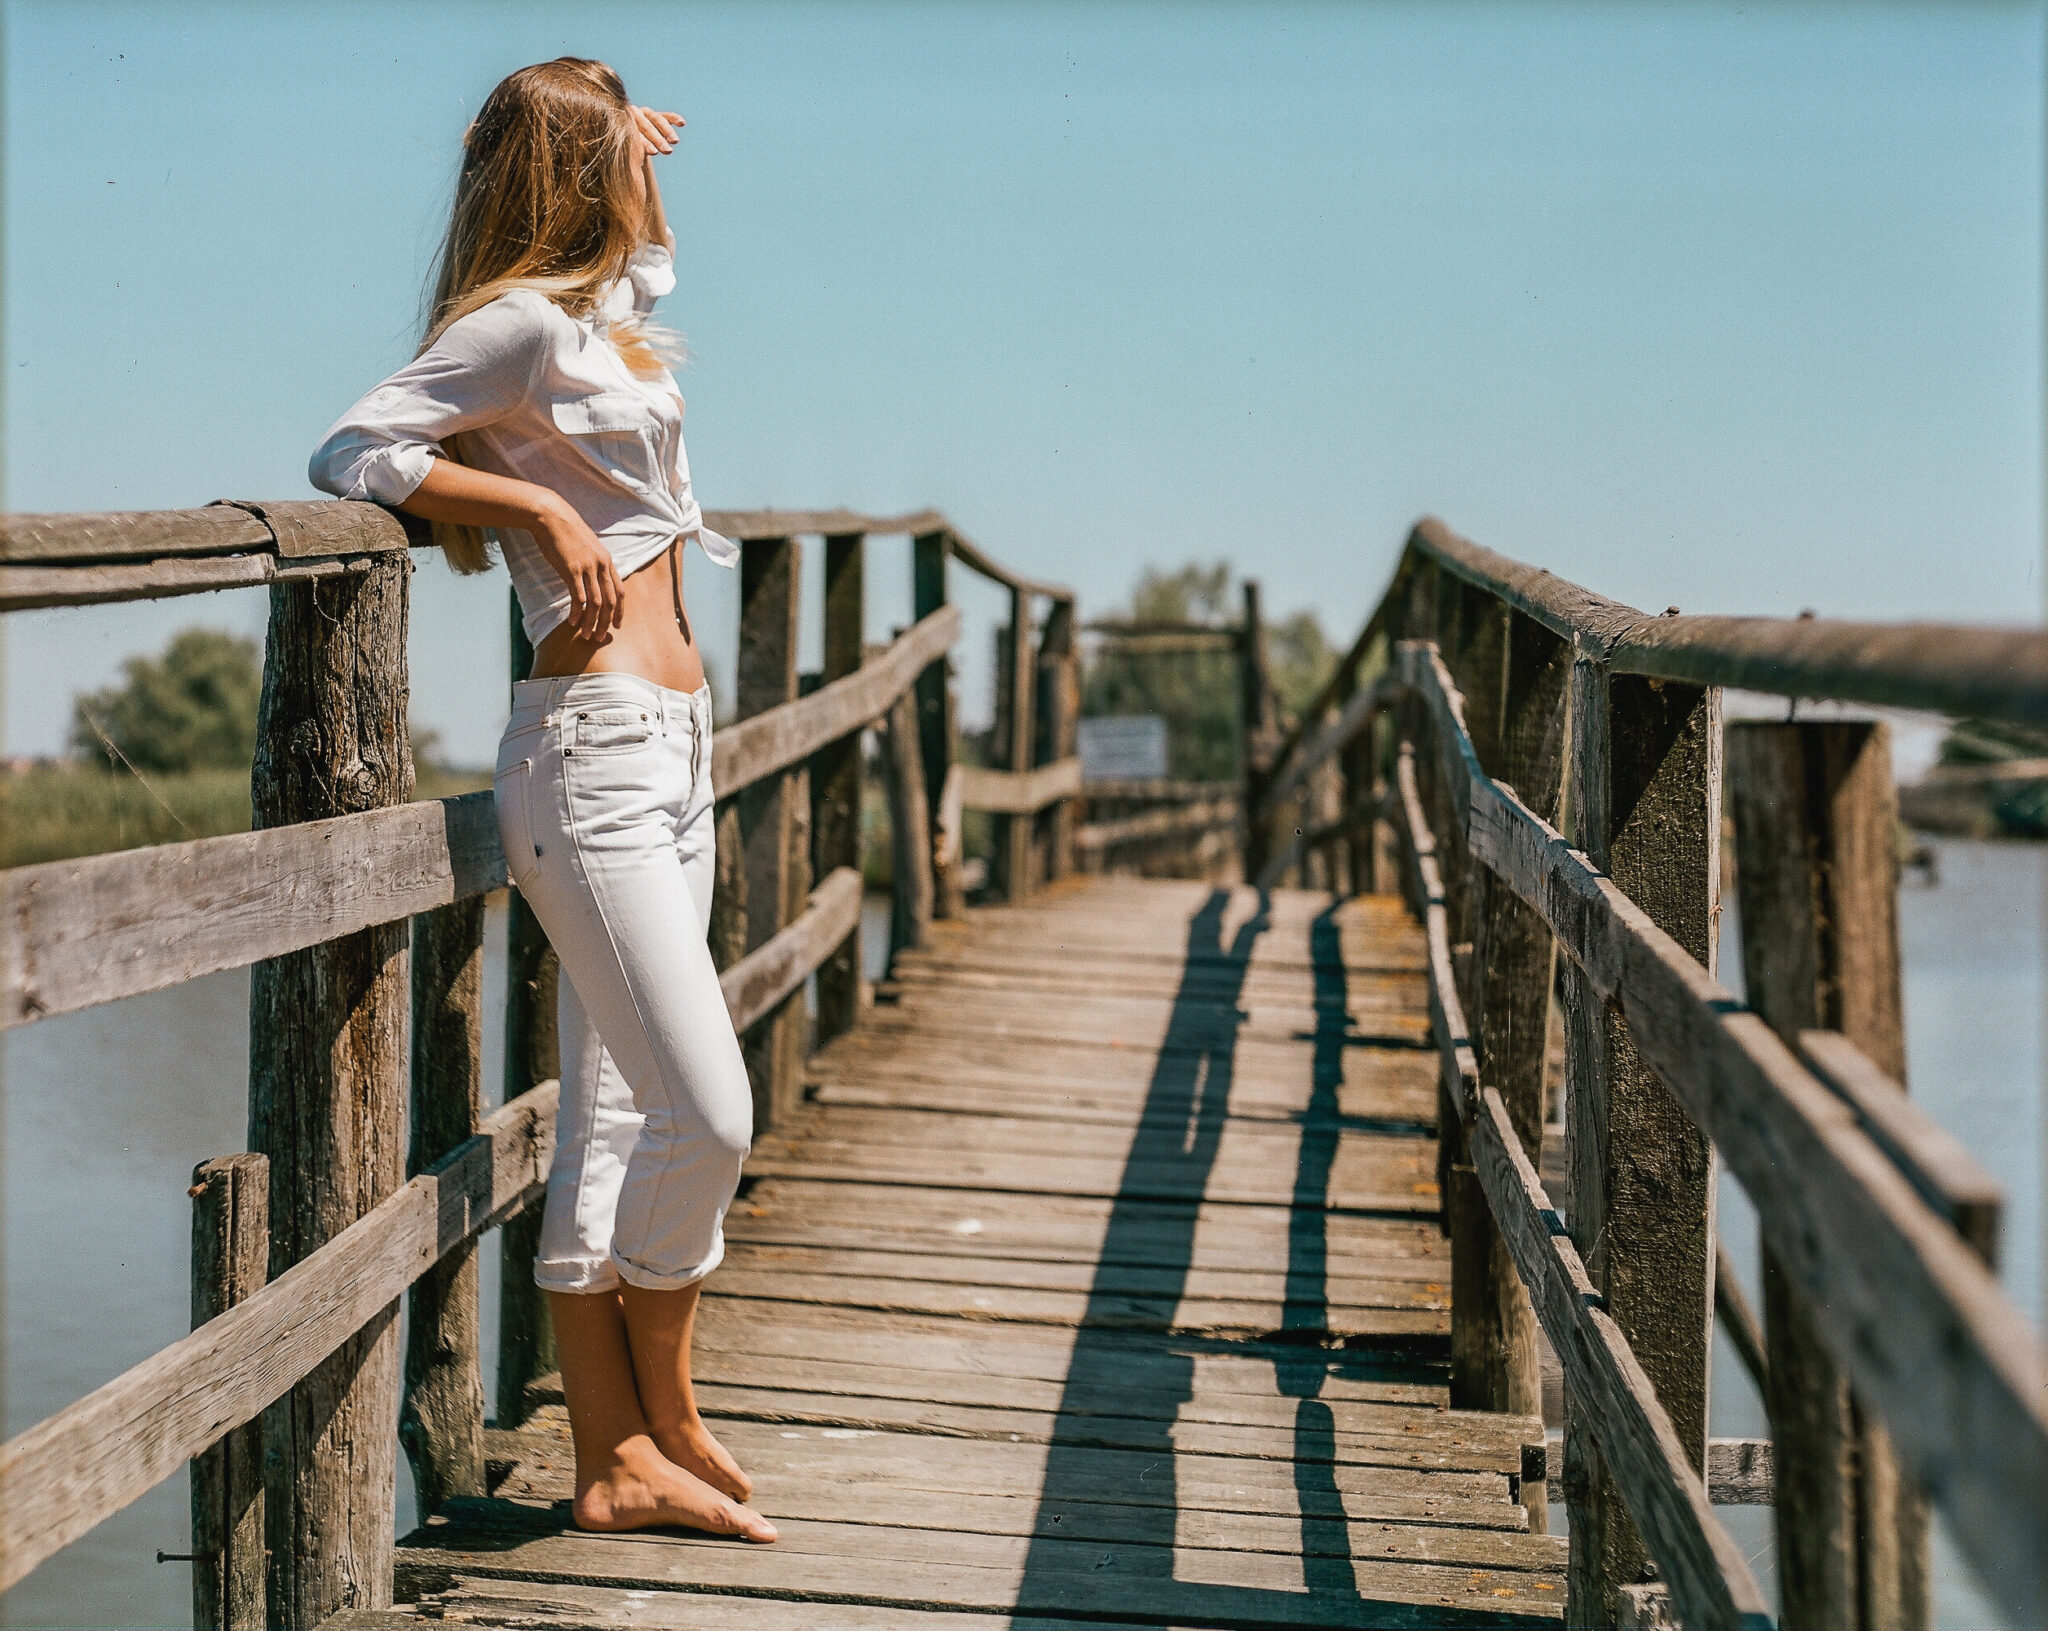 Modella con camicia bianca annodata e jeans bianchi su un ponte, guarda lontano, fotografia analogica